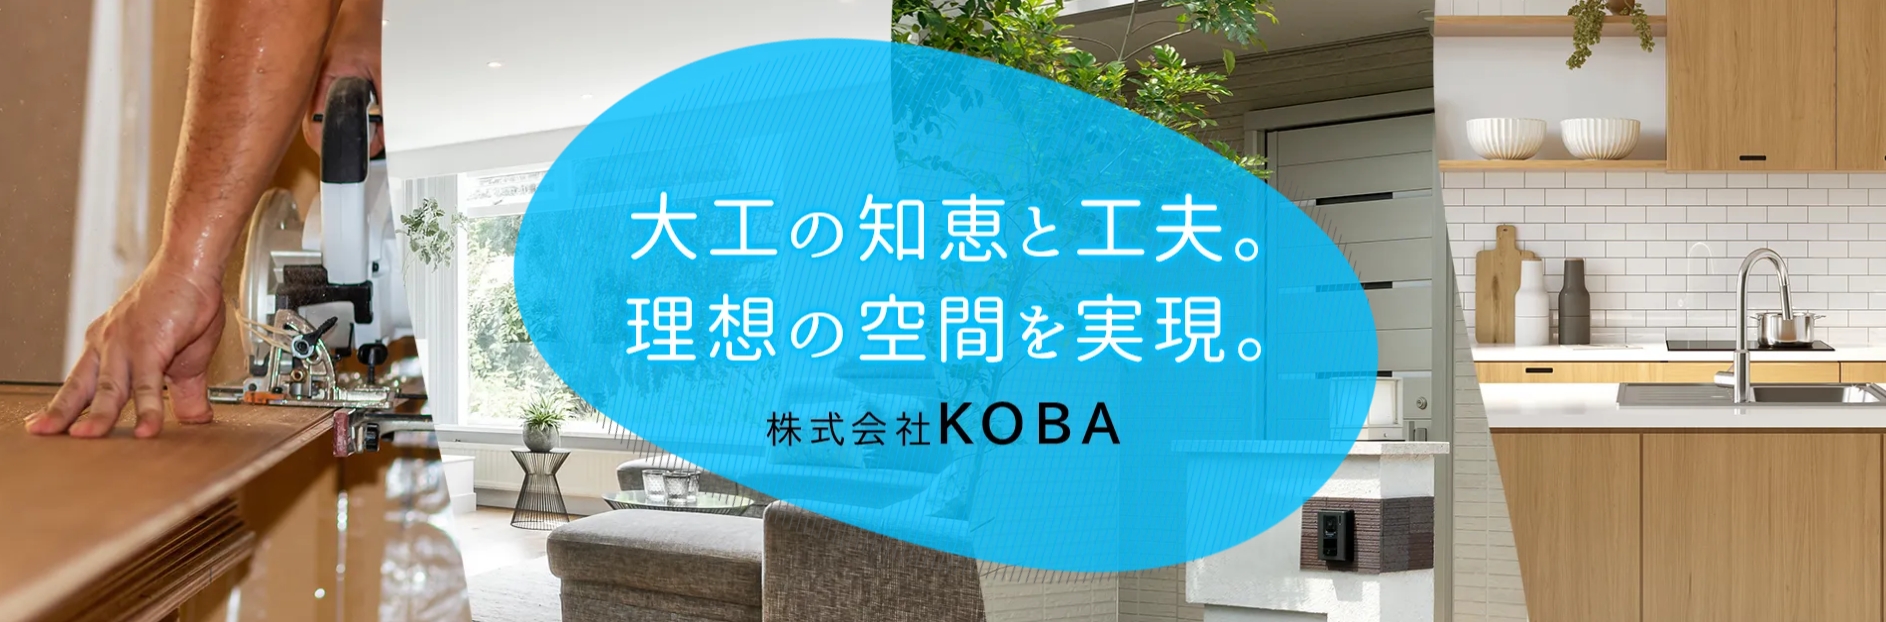 株式会社KOBA